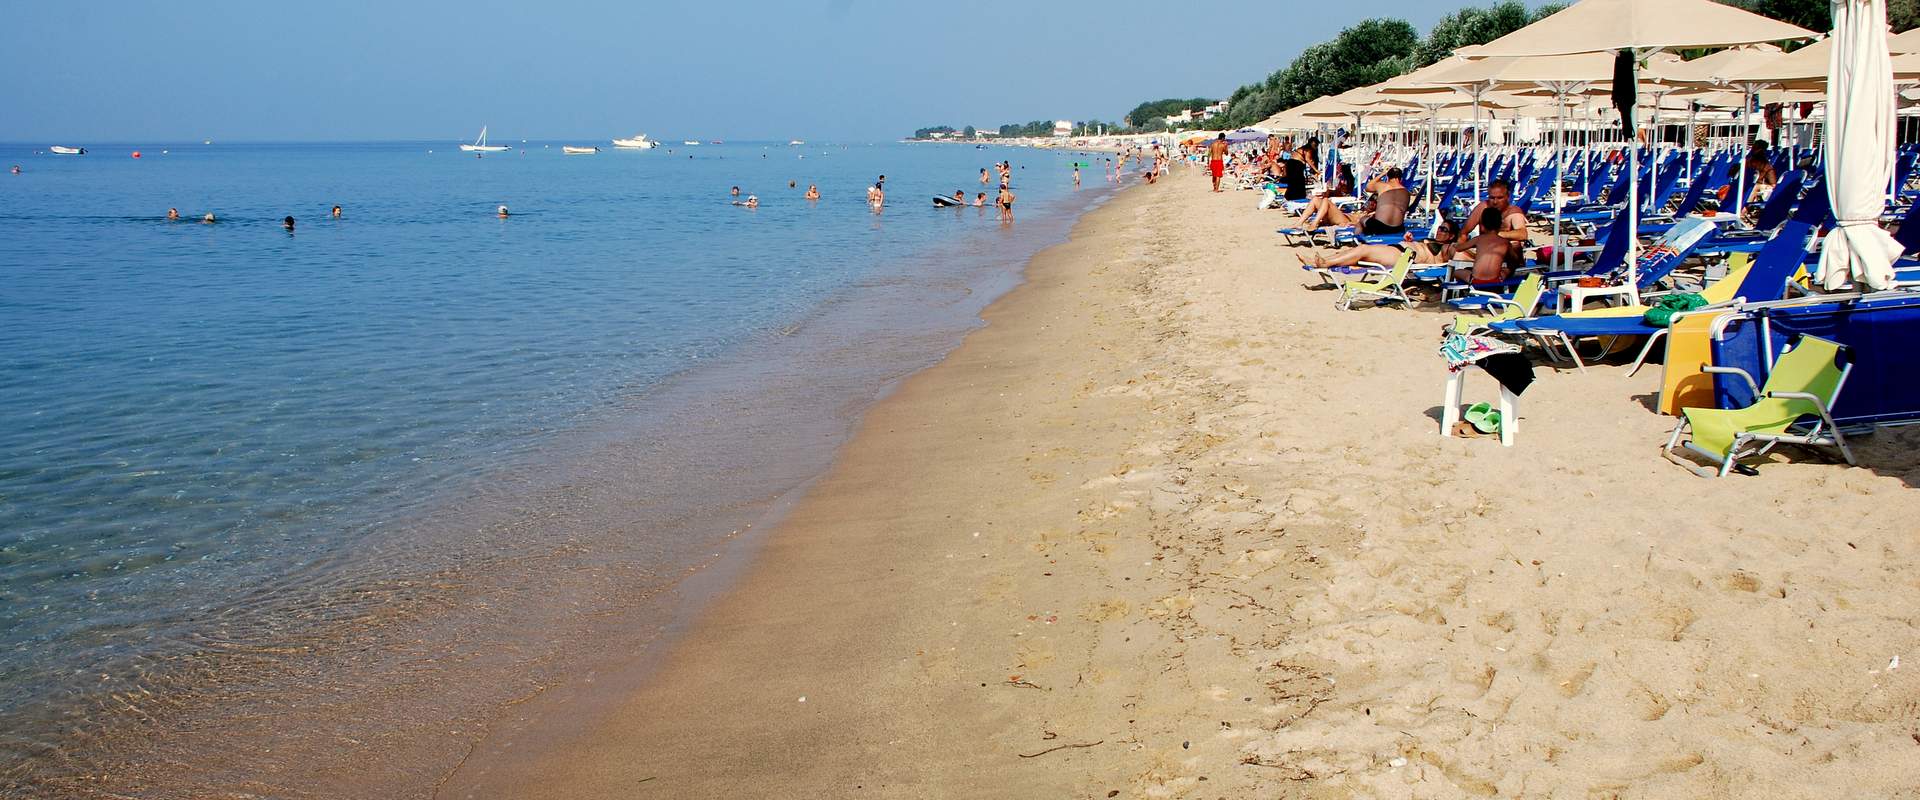 Flogita beach, Halkidiki, Greece